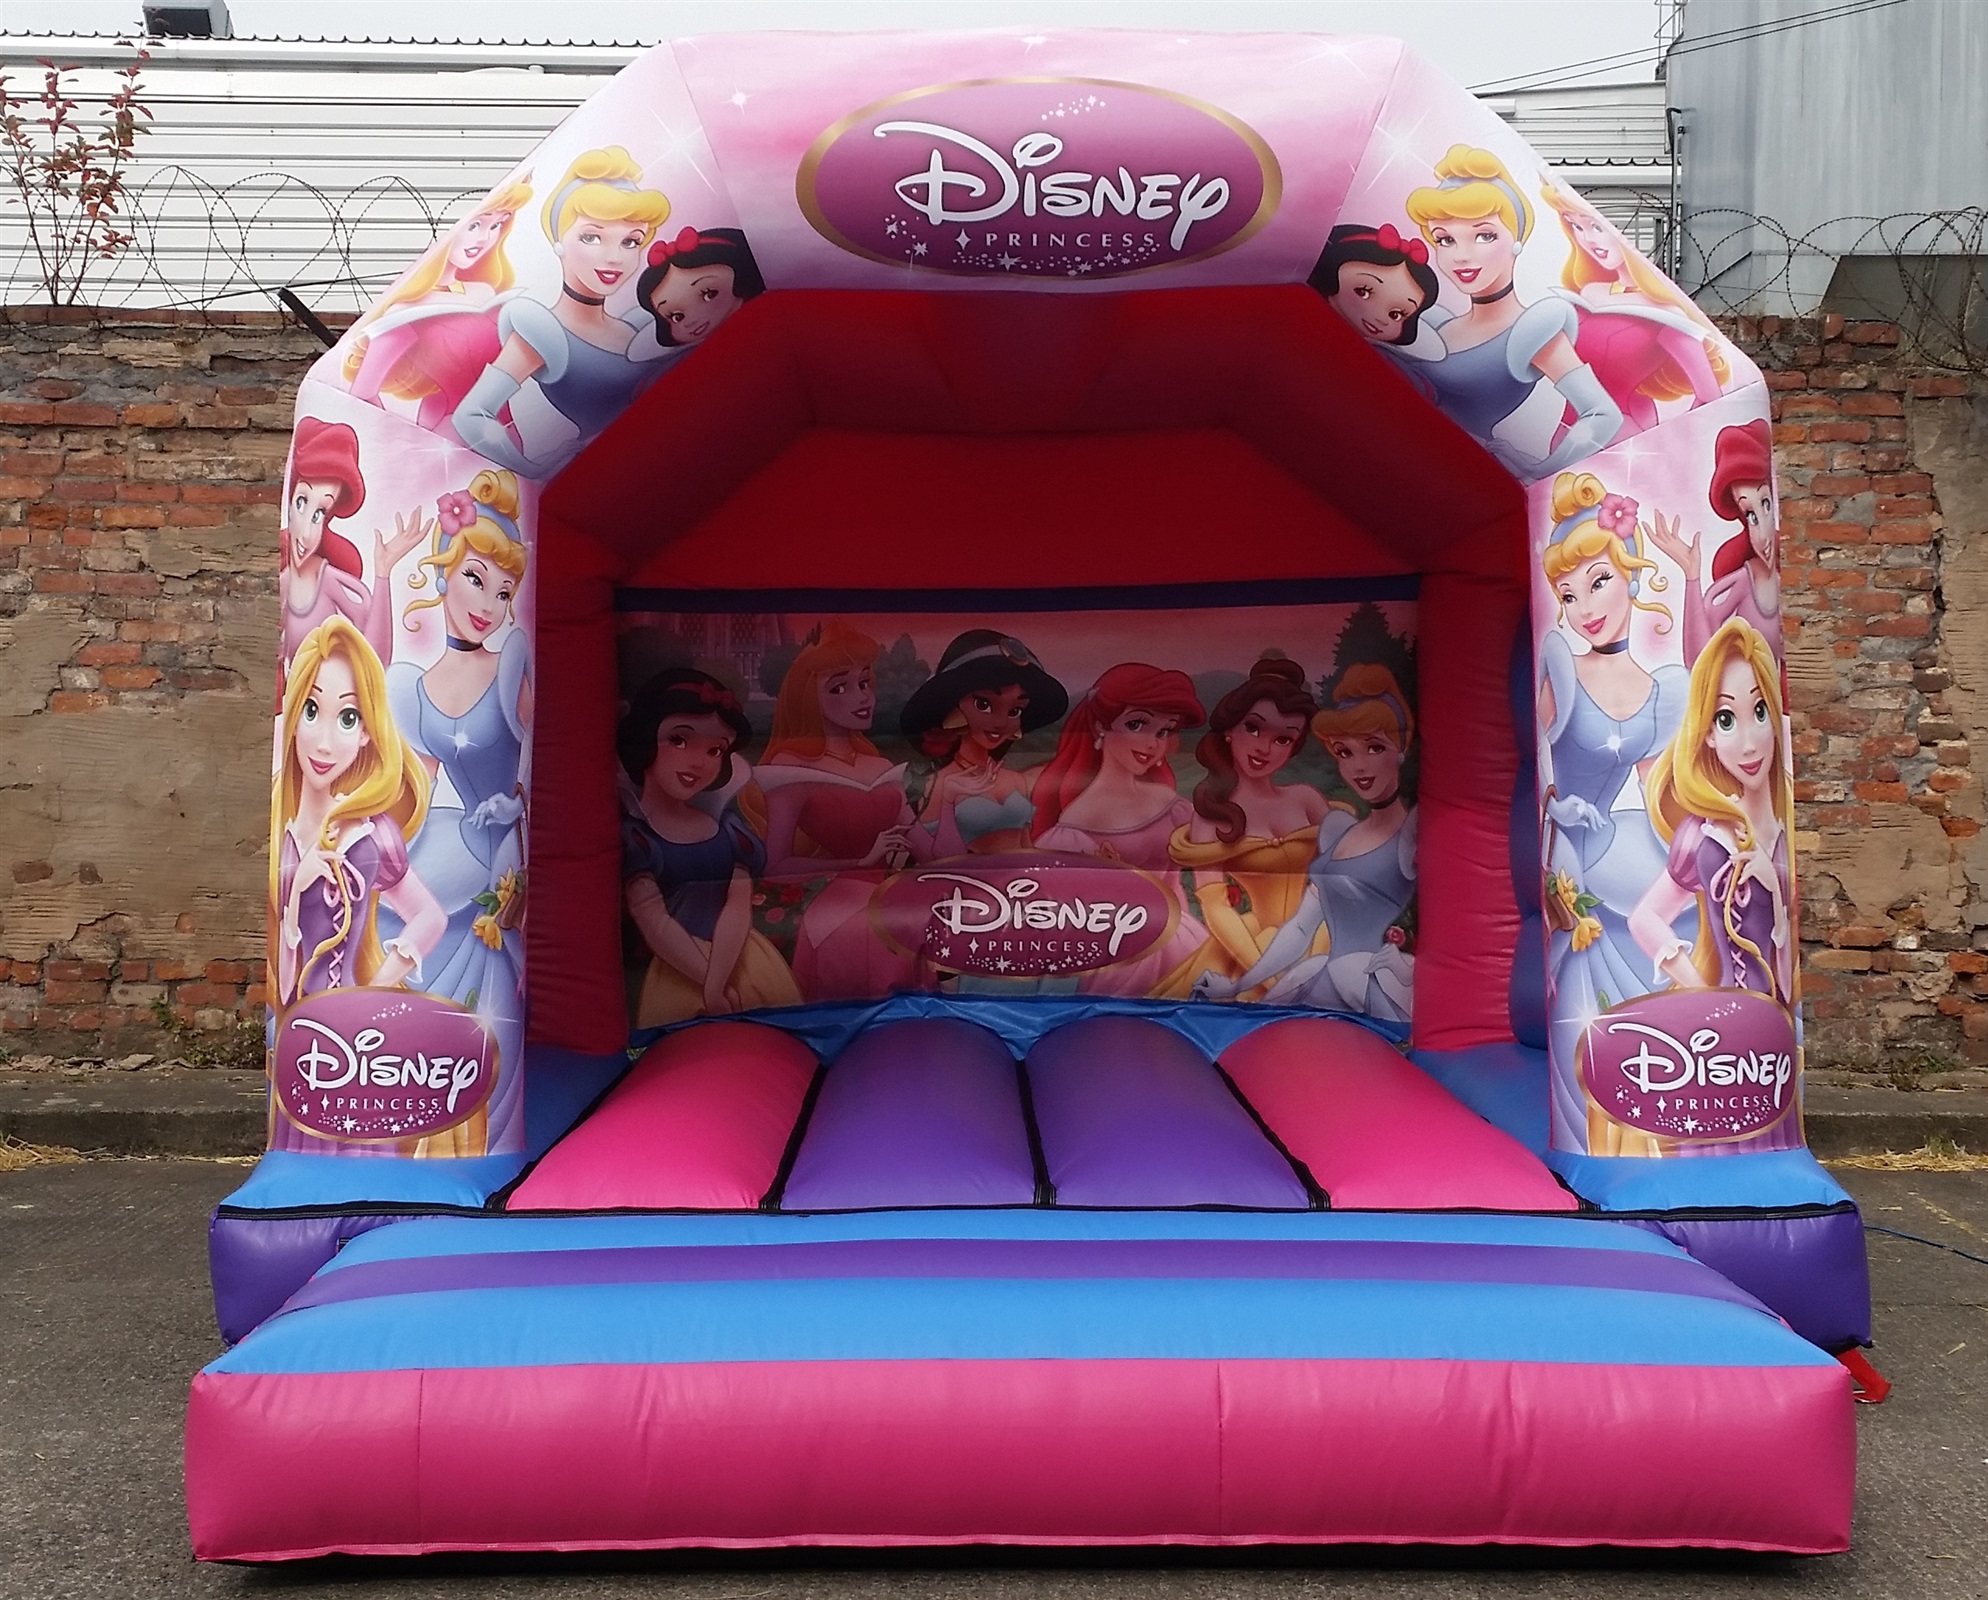 cinderella bouncy castle